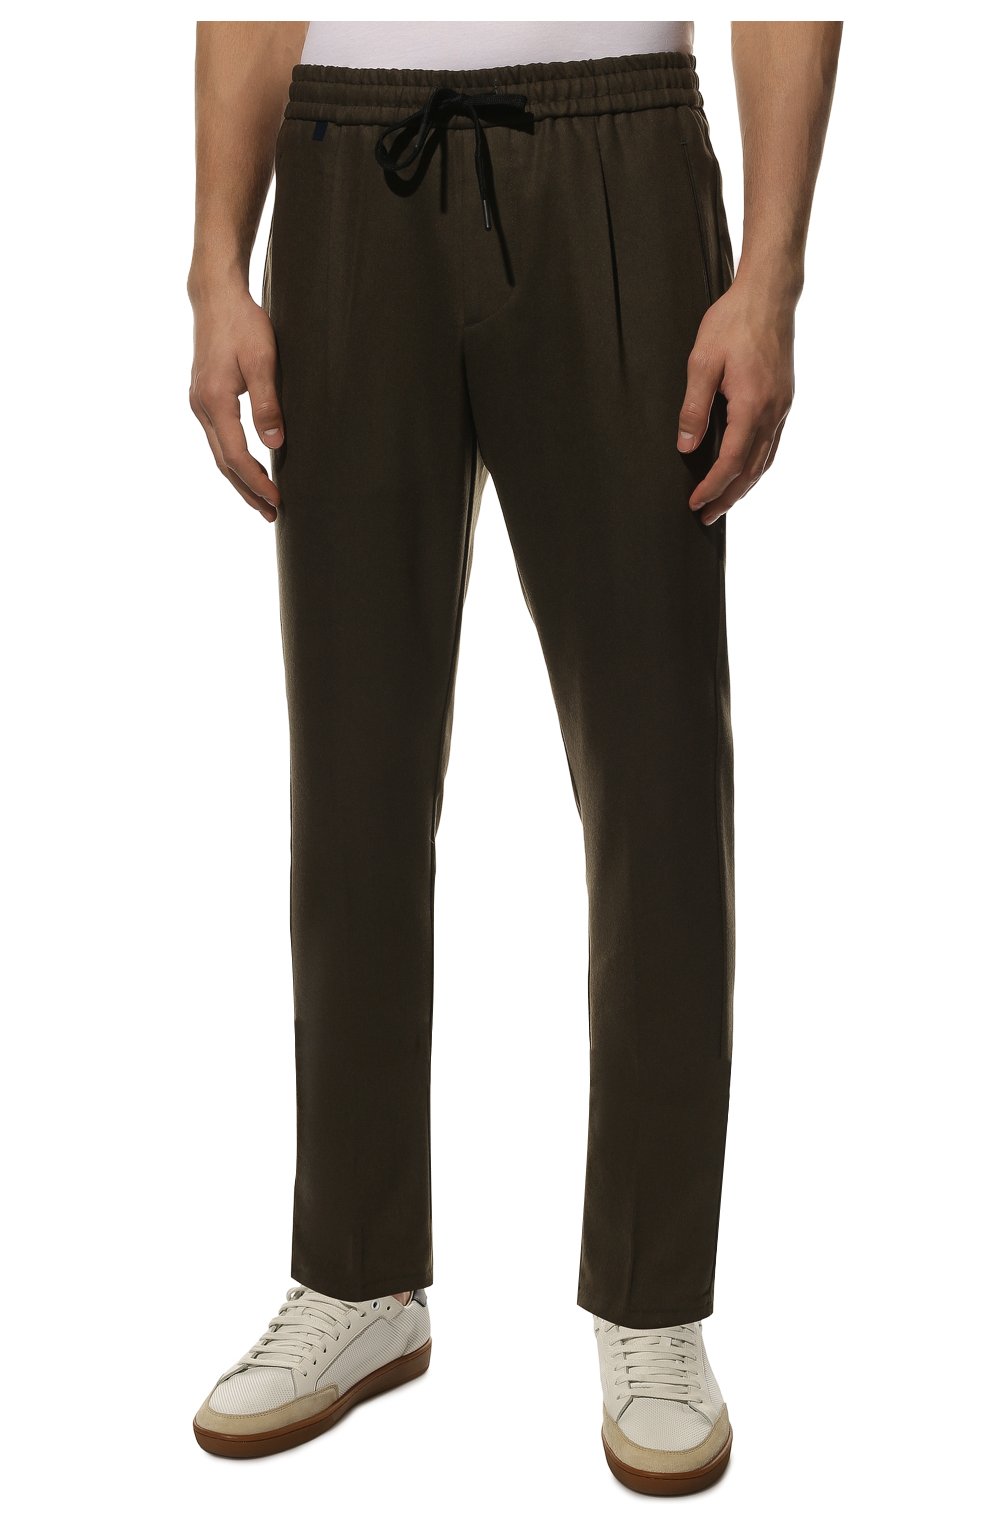 Мужские шерстяные брюки BERWICH хаки цвета, арт. SPIAGGIA RETR0/RD1800X | Фото 3 (Материал внешний: Шерсть; Длина (брюки, джинсы): Стандартные; Случай: Повседневный; Материал подклада: Купро; Стили: Кэжуэл)